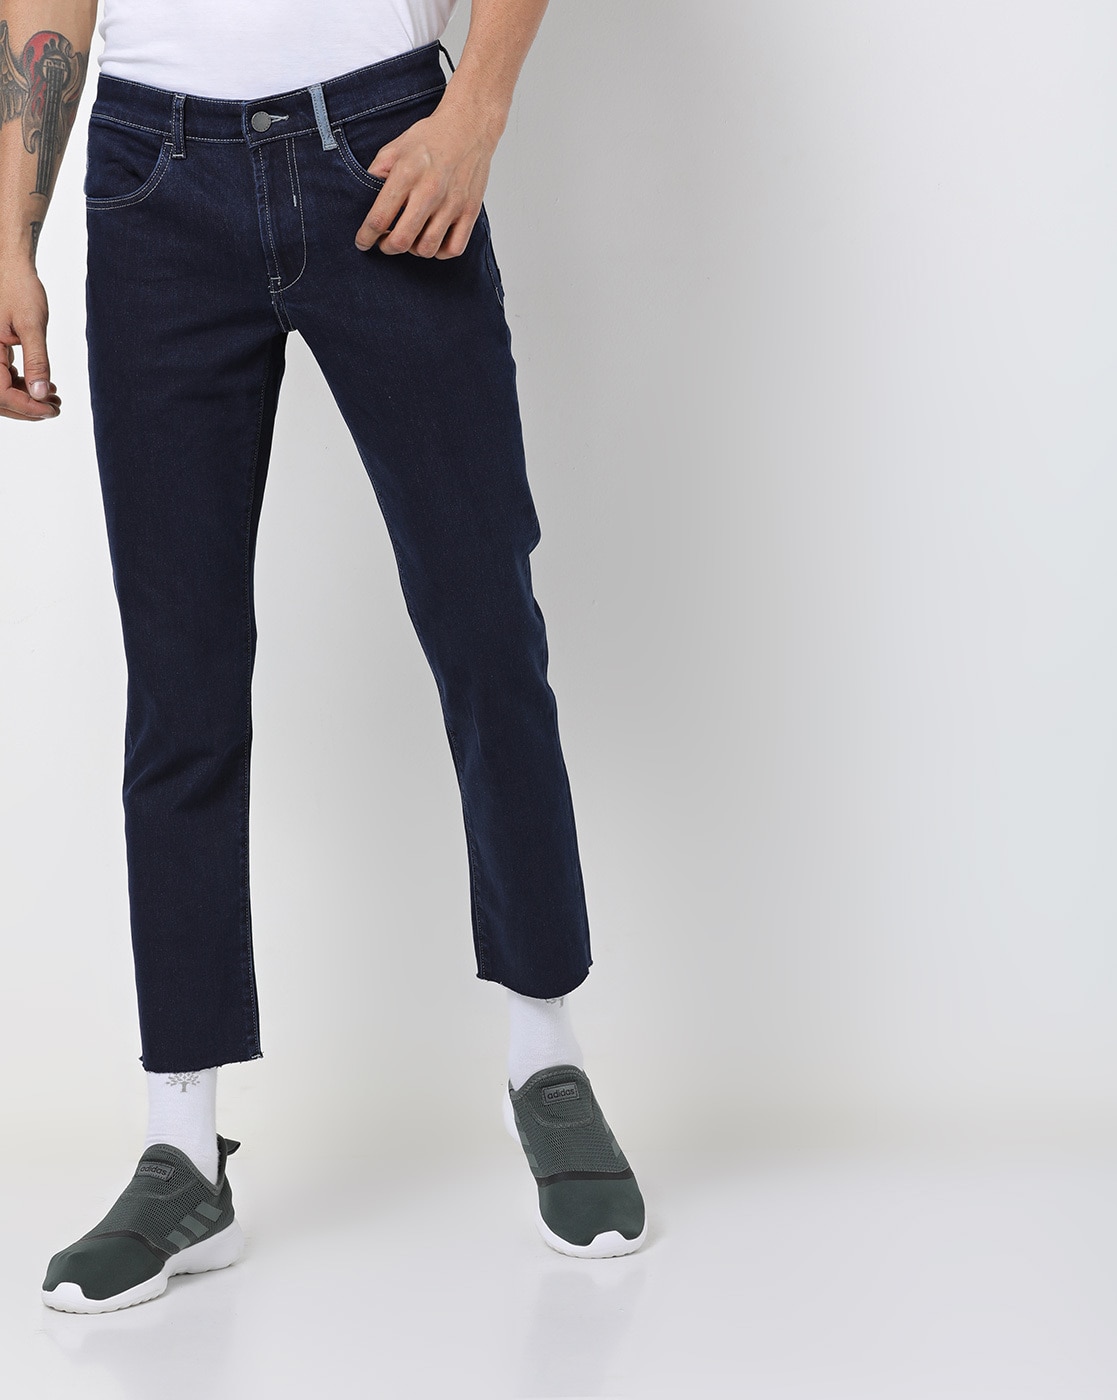 crop fit jeans mens